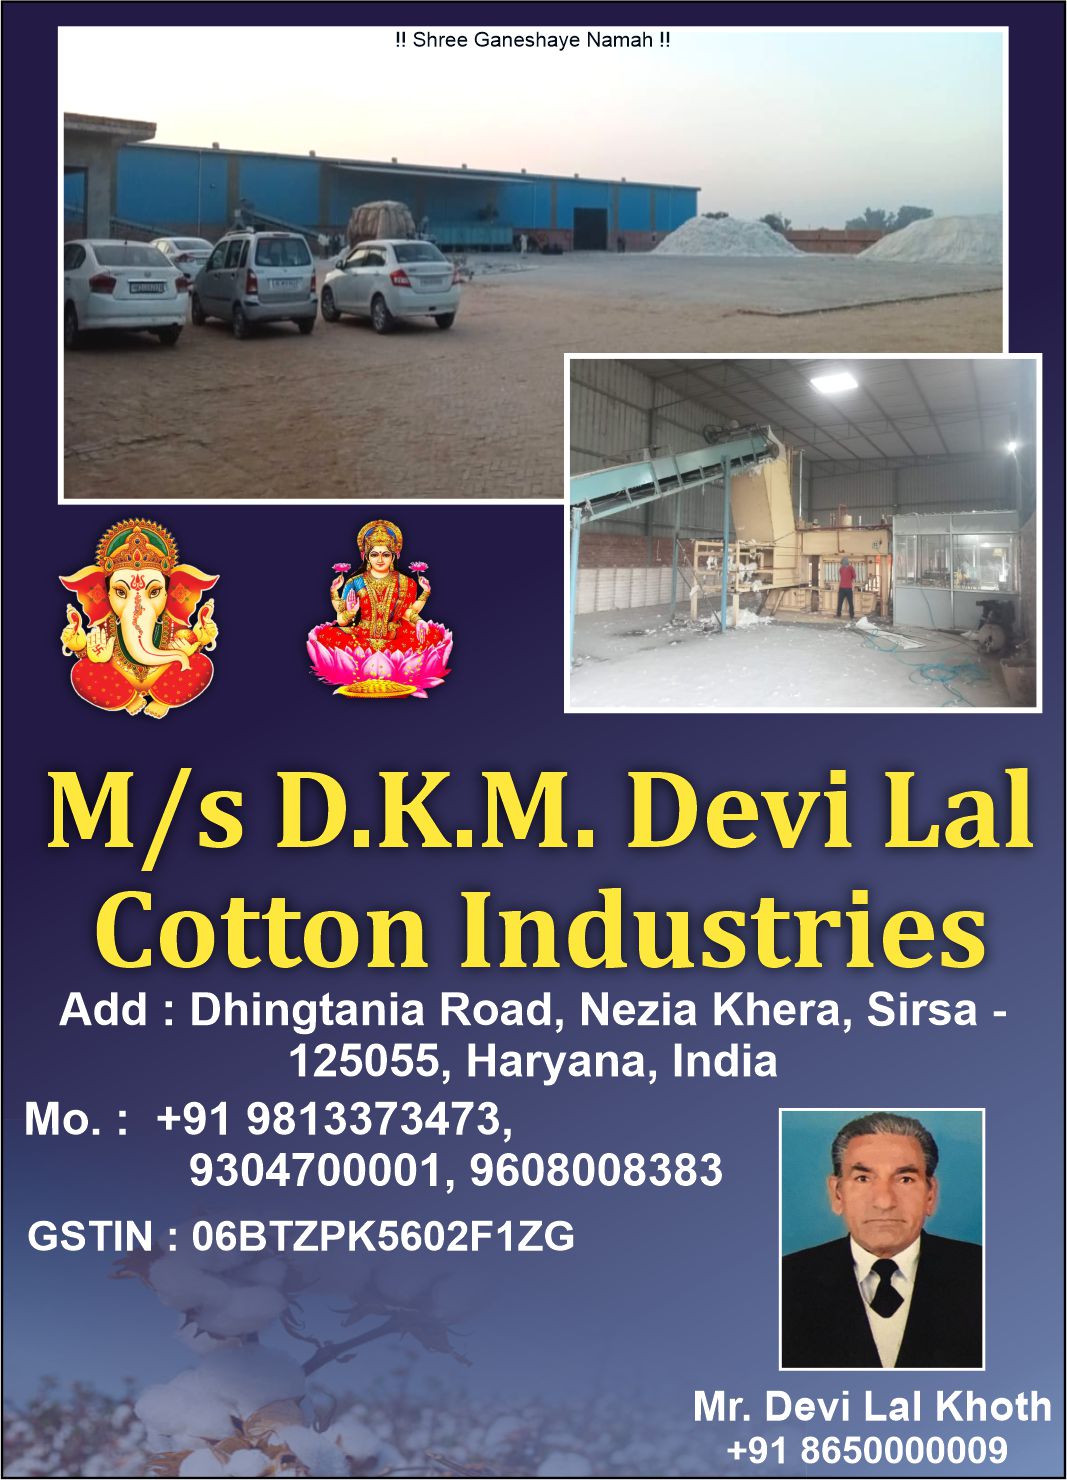 D.K.M. Devi Lal Cotton Industries